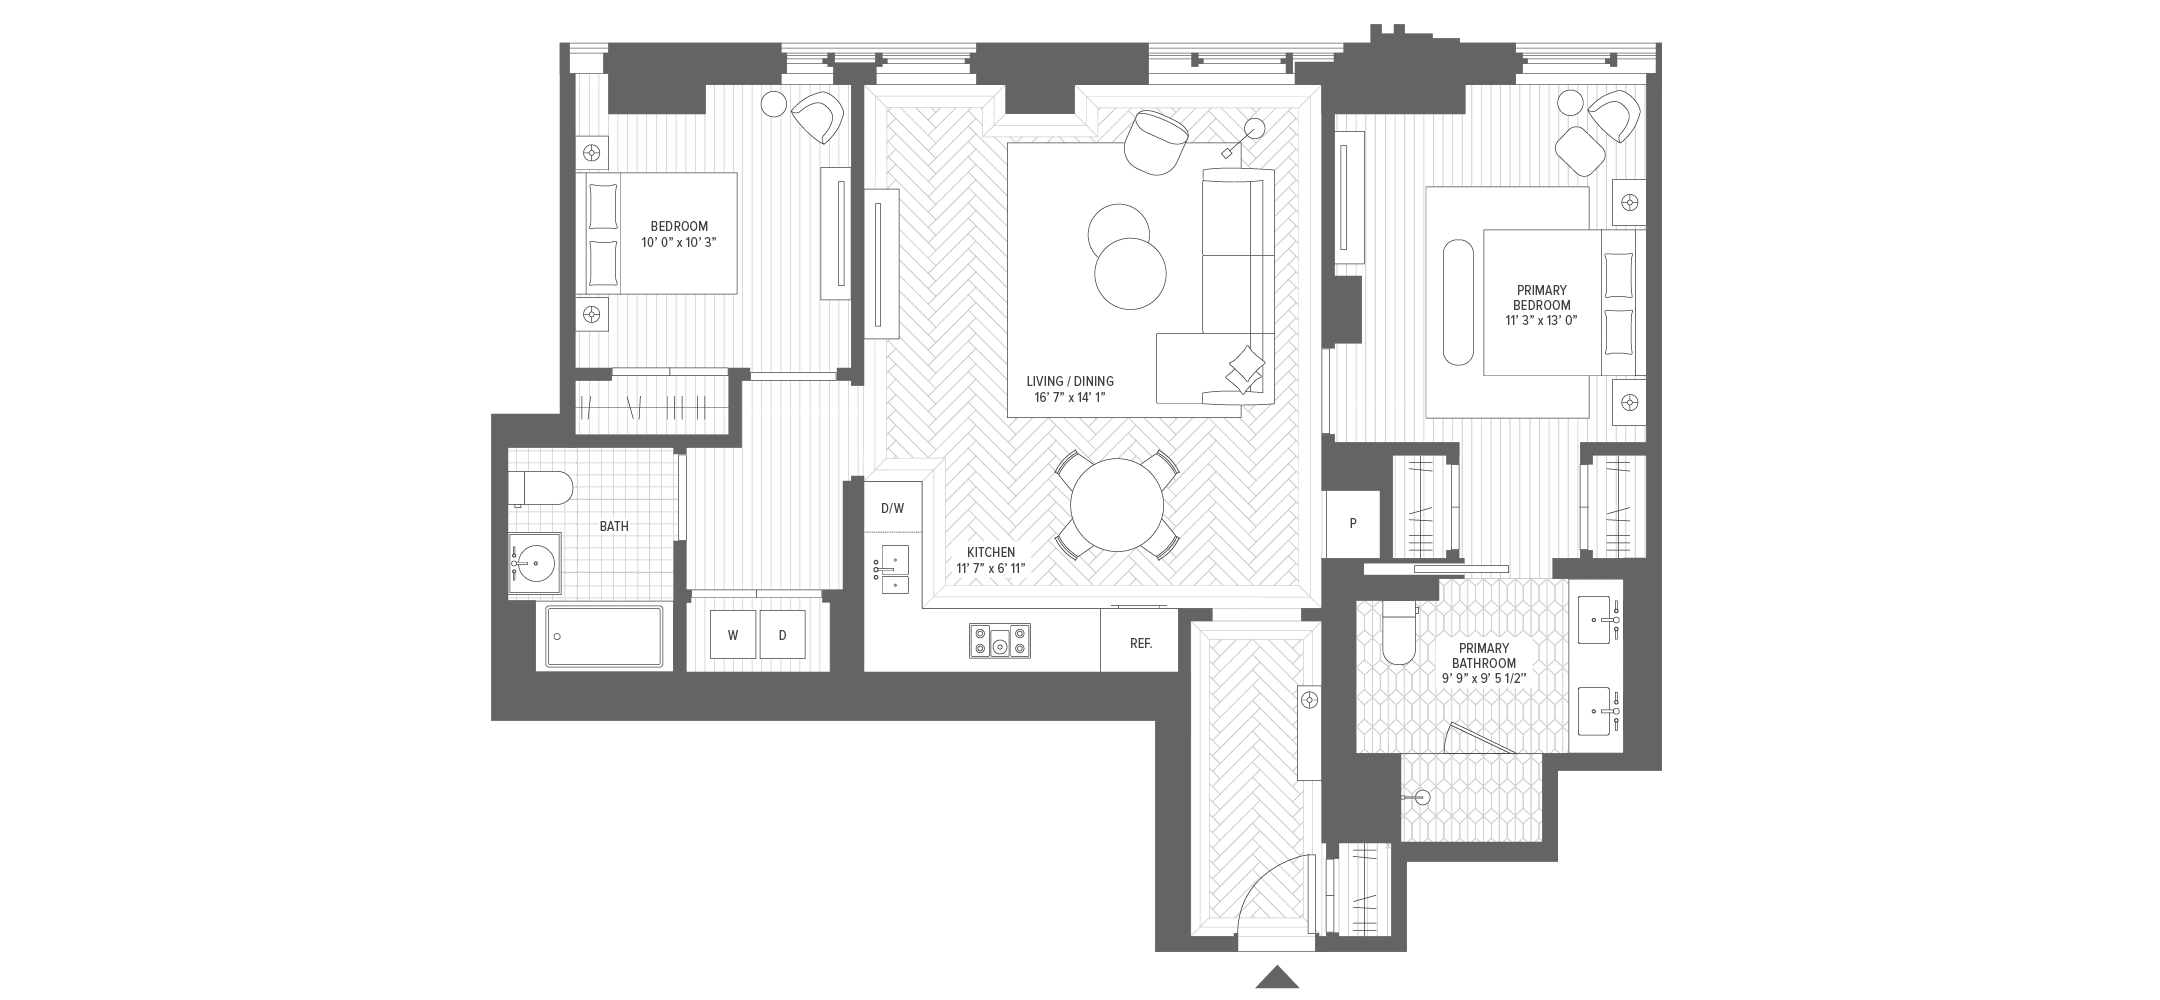 Unit 5A floorplan